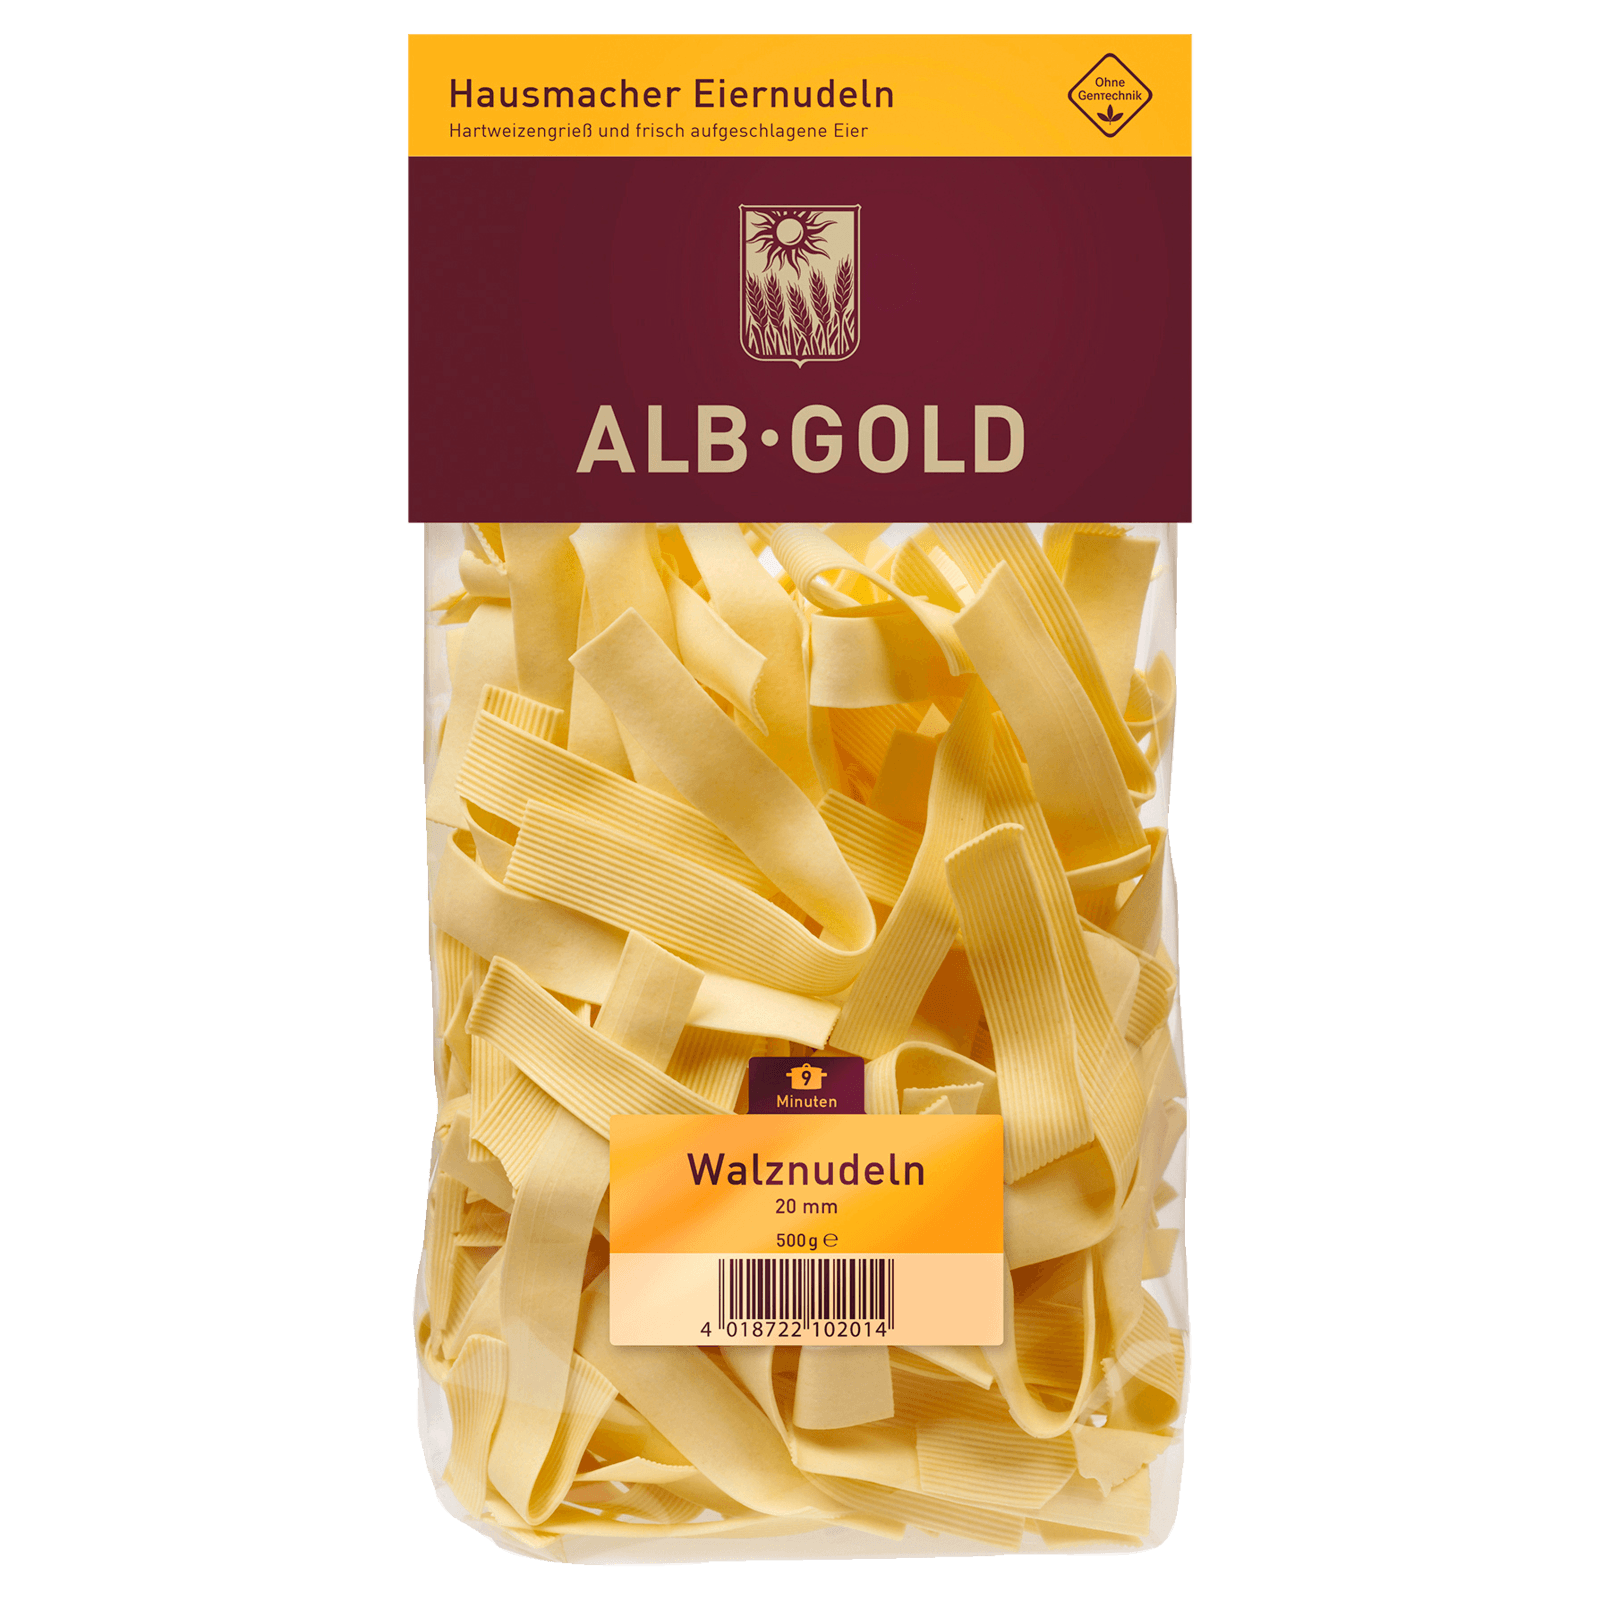 Alb-Gold Walznudeln 20mm 500g  für 2.99 EUR